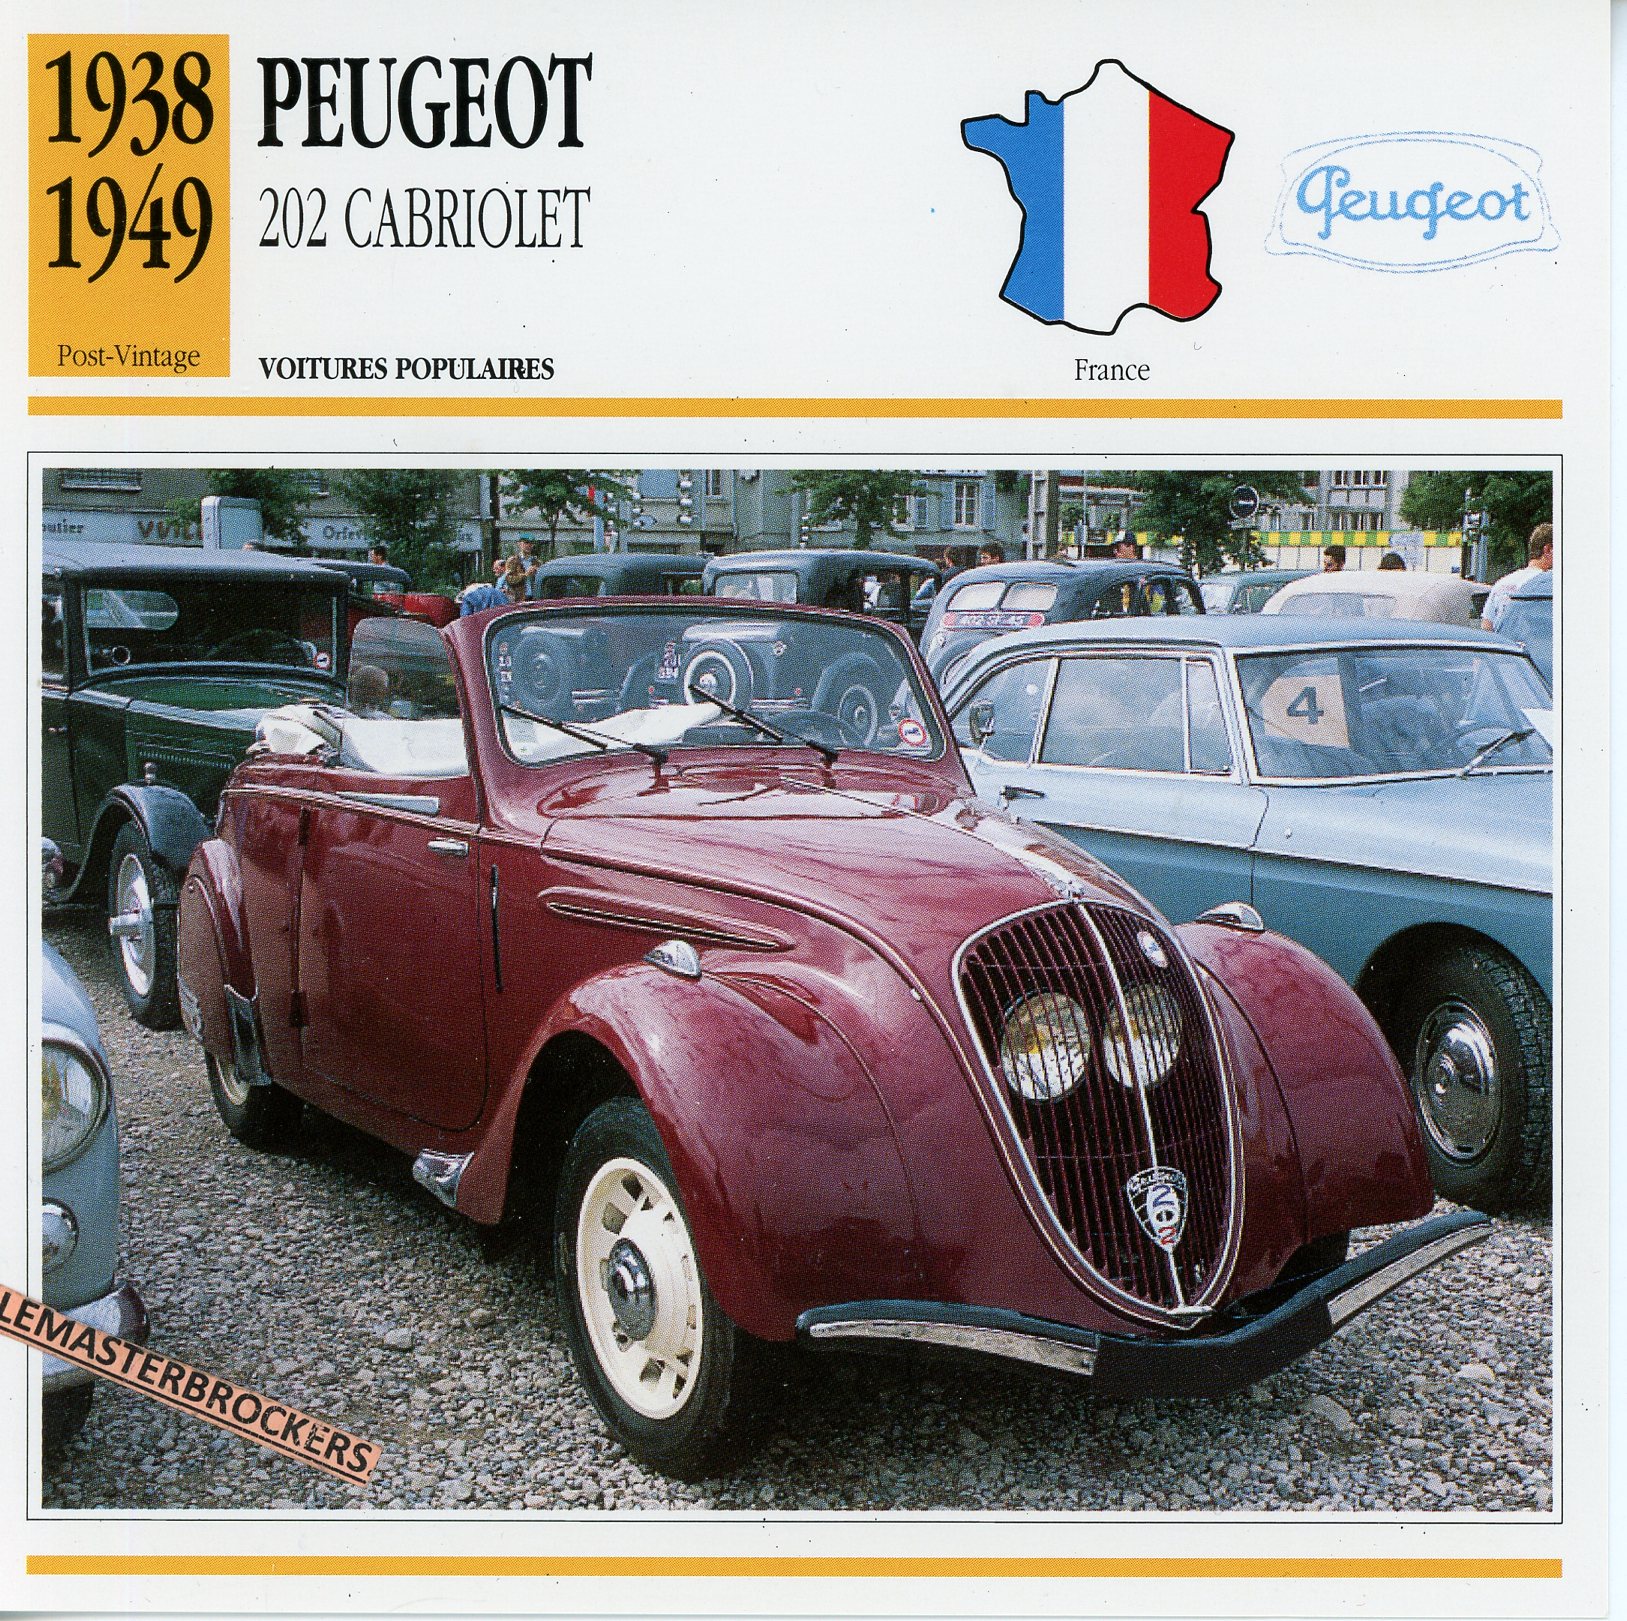 PEUGEOT-202-CABRIOLET-1938-1949-FICHE-AUTO-ATLAS-LEMASTERBROCKERS